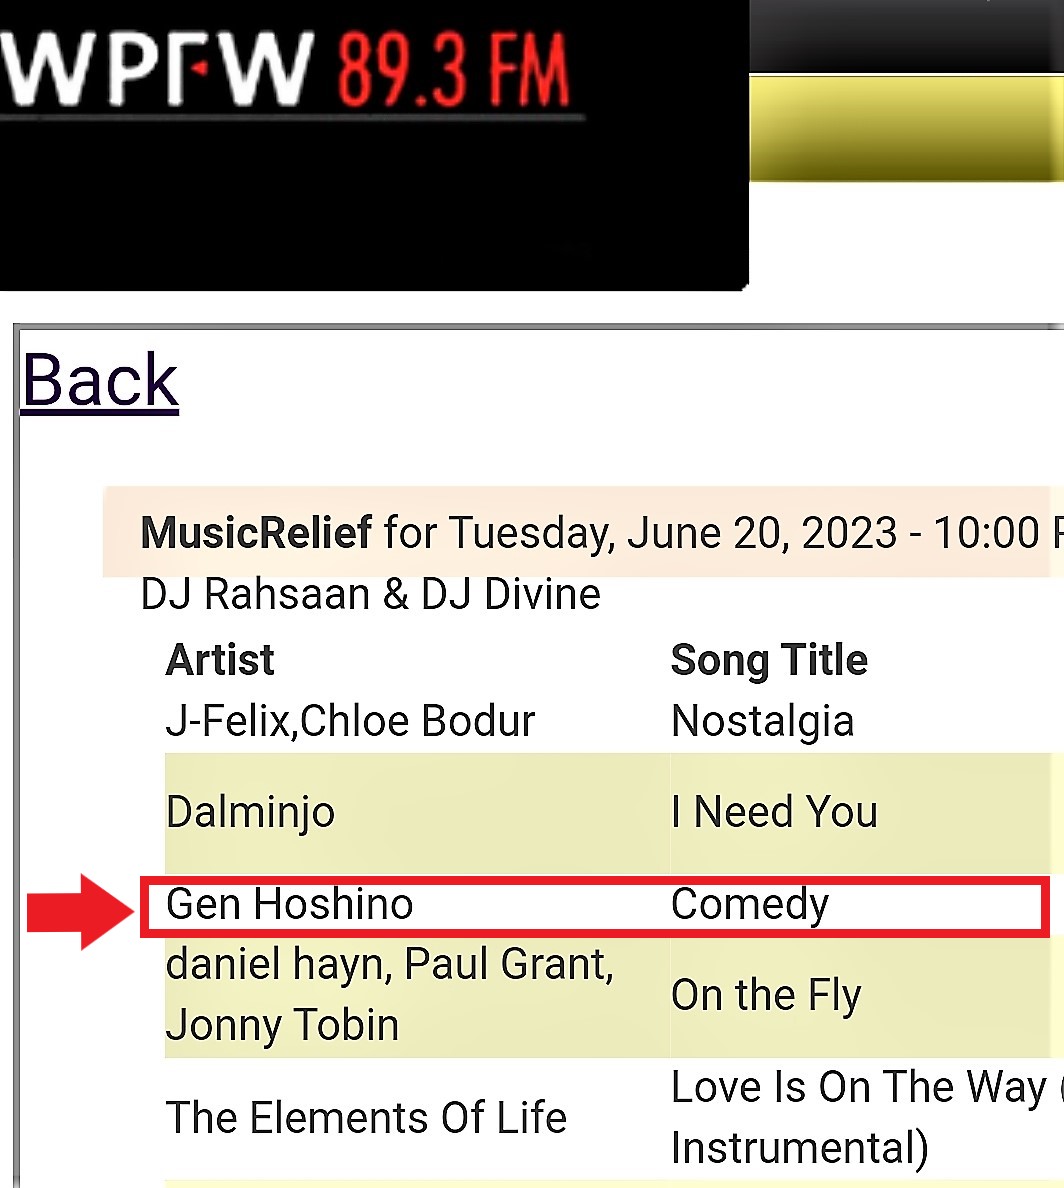 アメリカ・ワシントンD.C.の有名ラジオ局「WPFW 89.3 FM 」の音楽ラジオ番組「Music Relief」が6月20日、源さんの楽曲「#喜劇」を放送した。

この曲はこの英語のラジオ番組で唯一の日本語曲です!👏

#星野源
#genhoshino